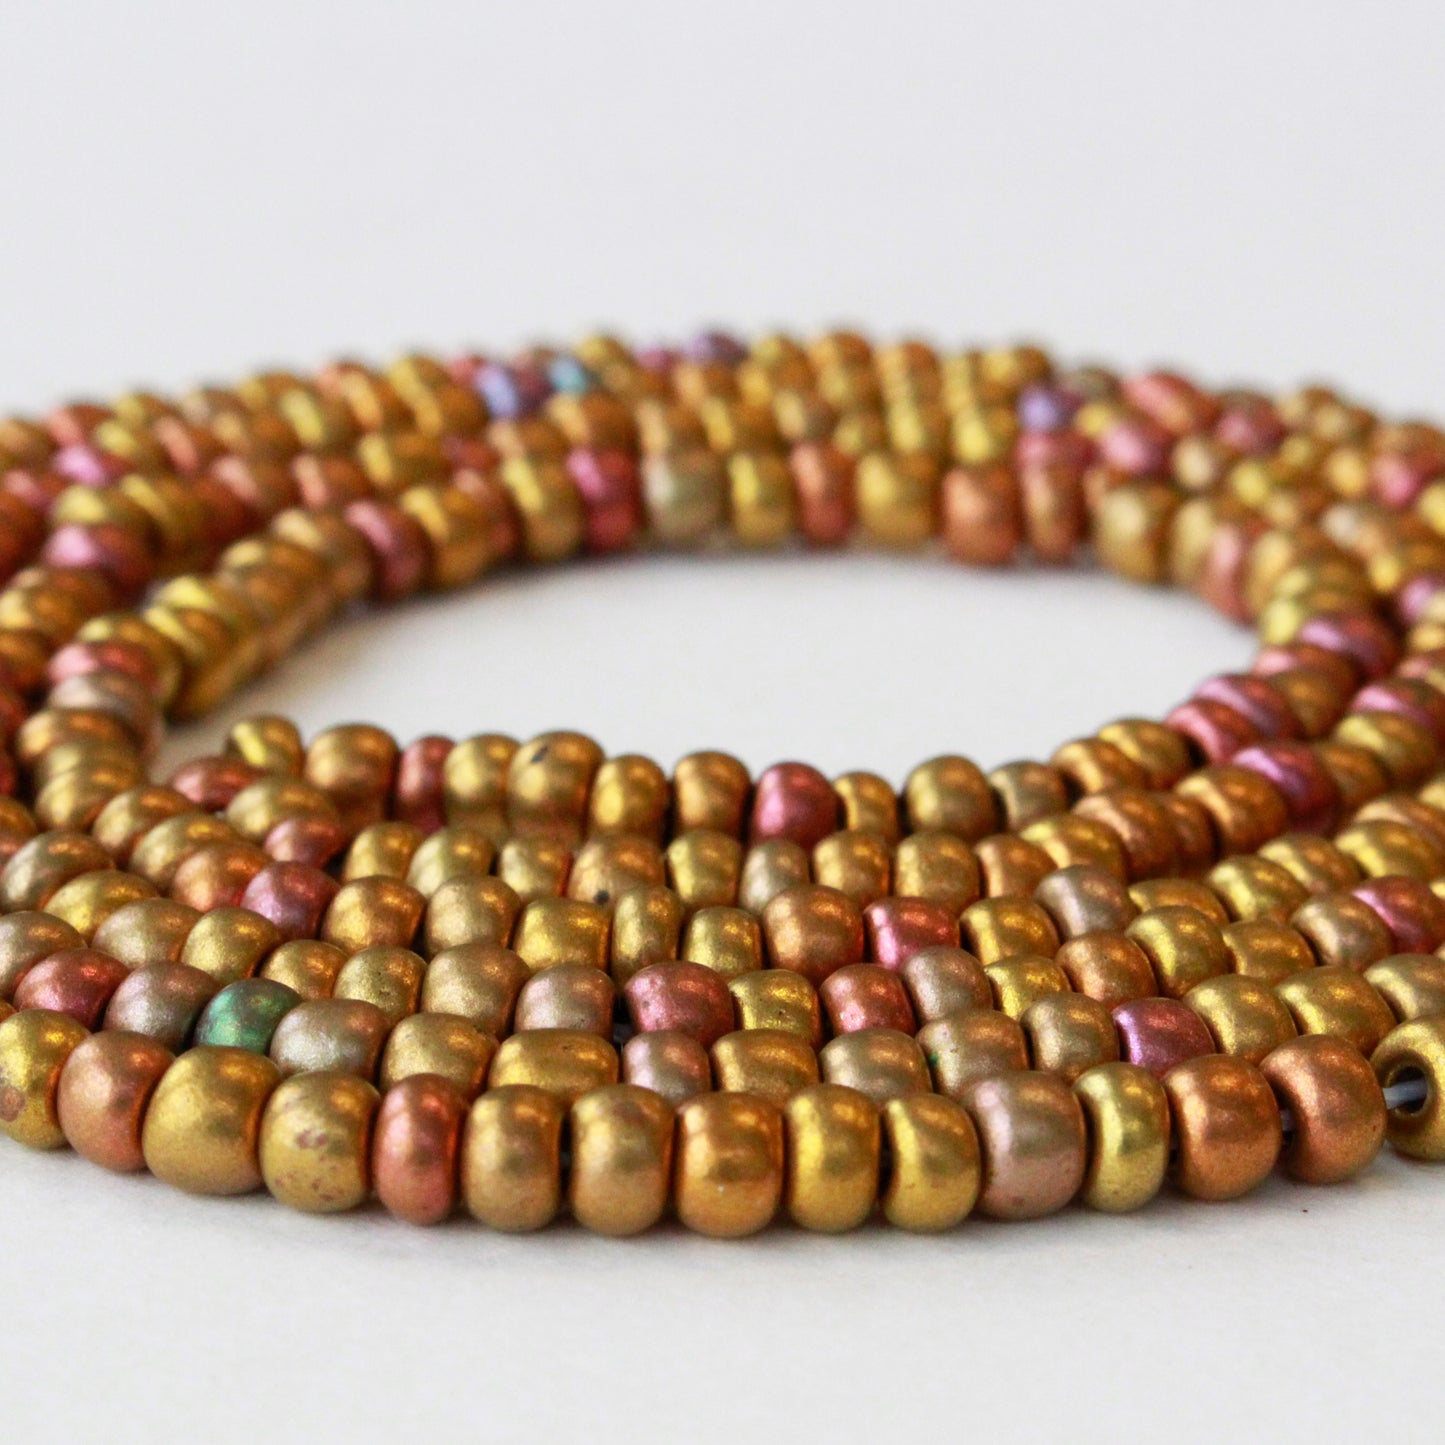 Size 6 Seed Beads - Rose Gold Iris - Choose Amount